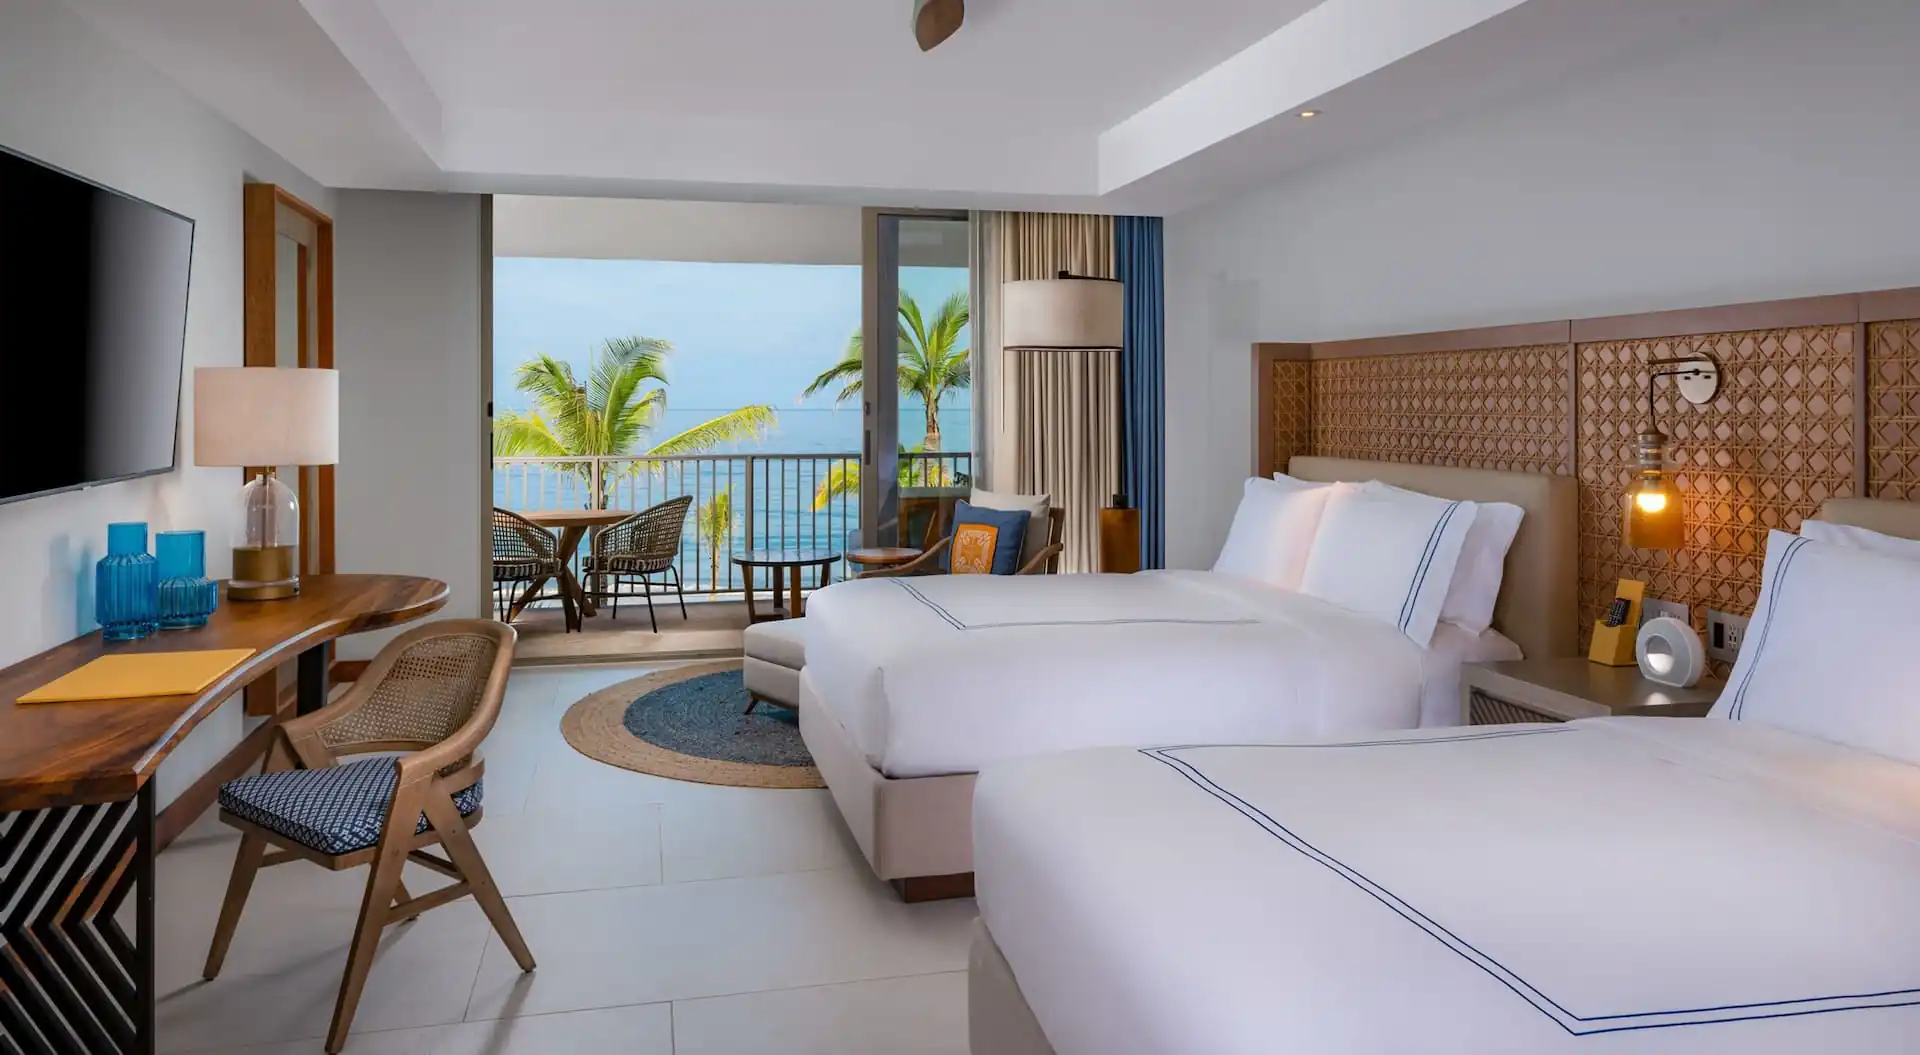 Habitación de hotel con dos camas y una silla y una vista impresionante del océano desde el balcón